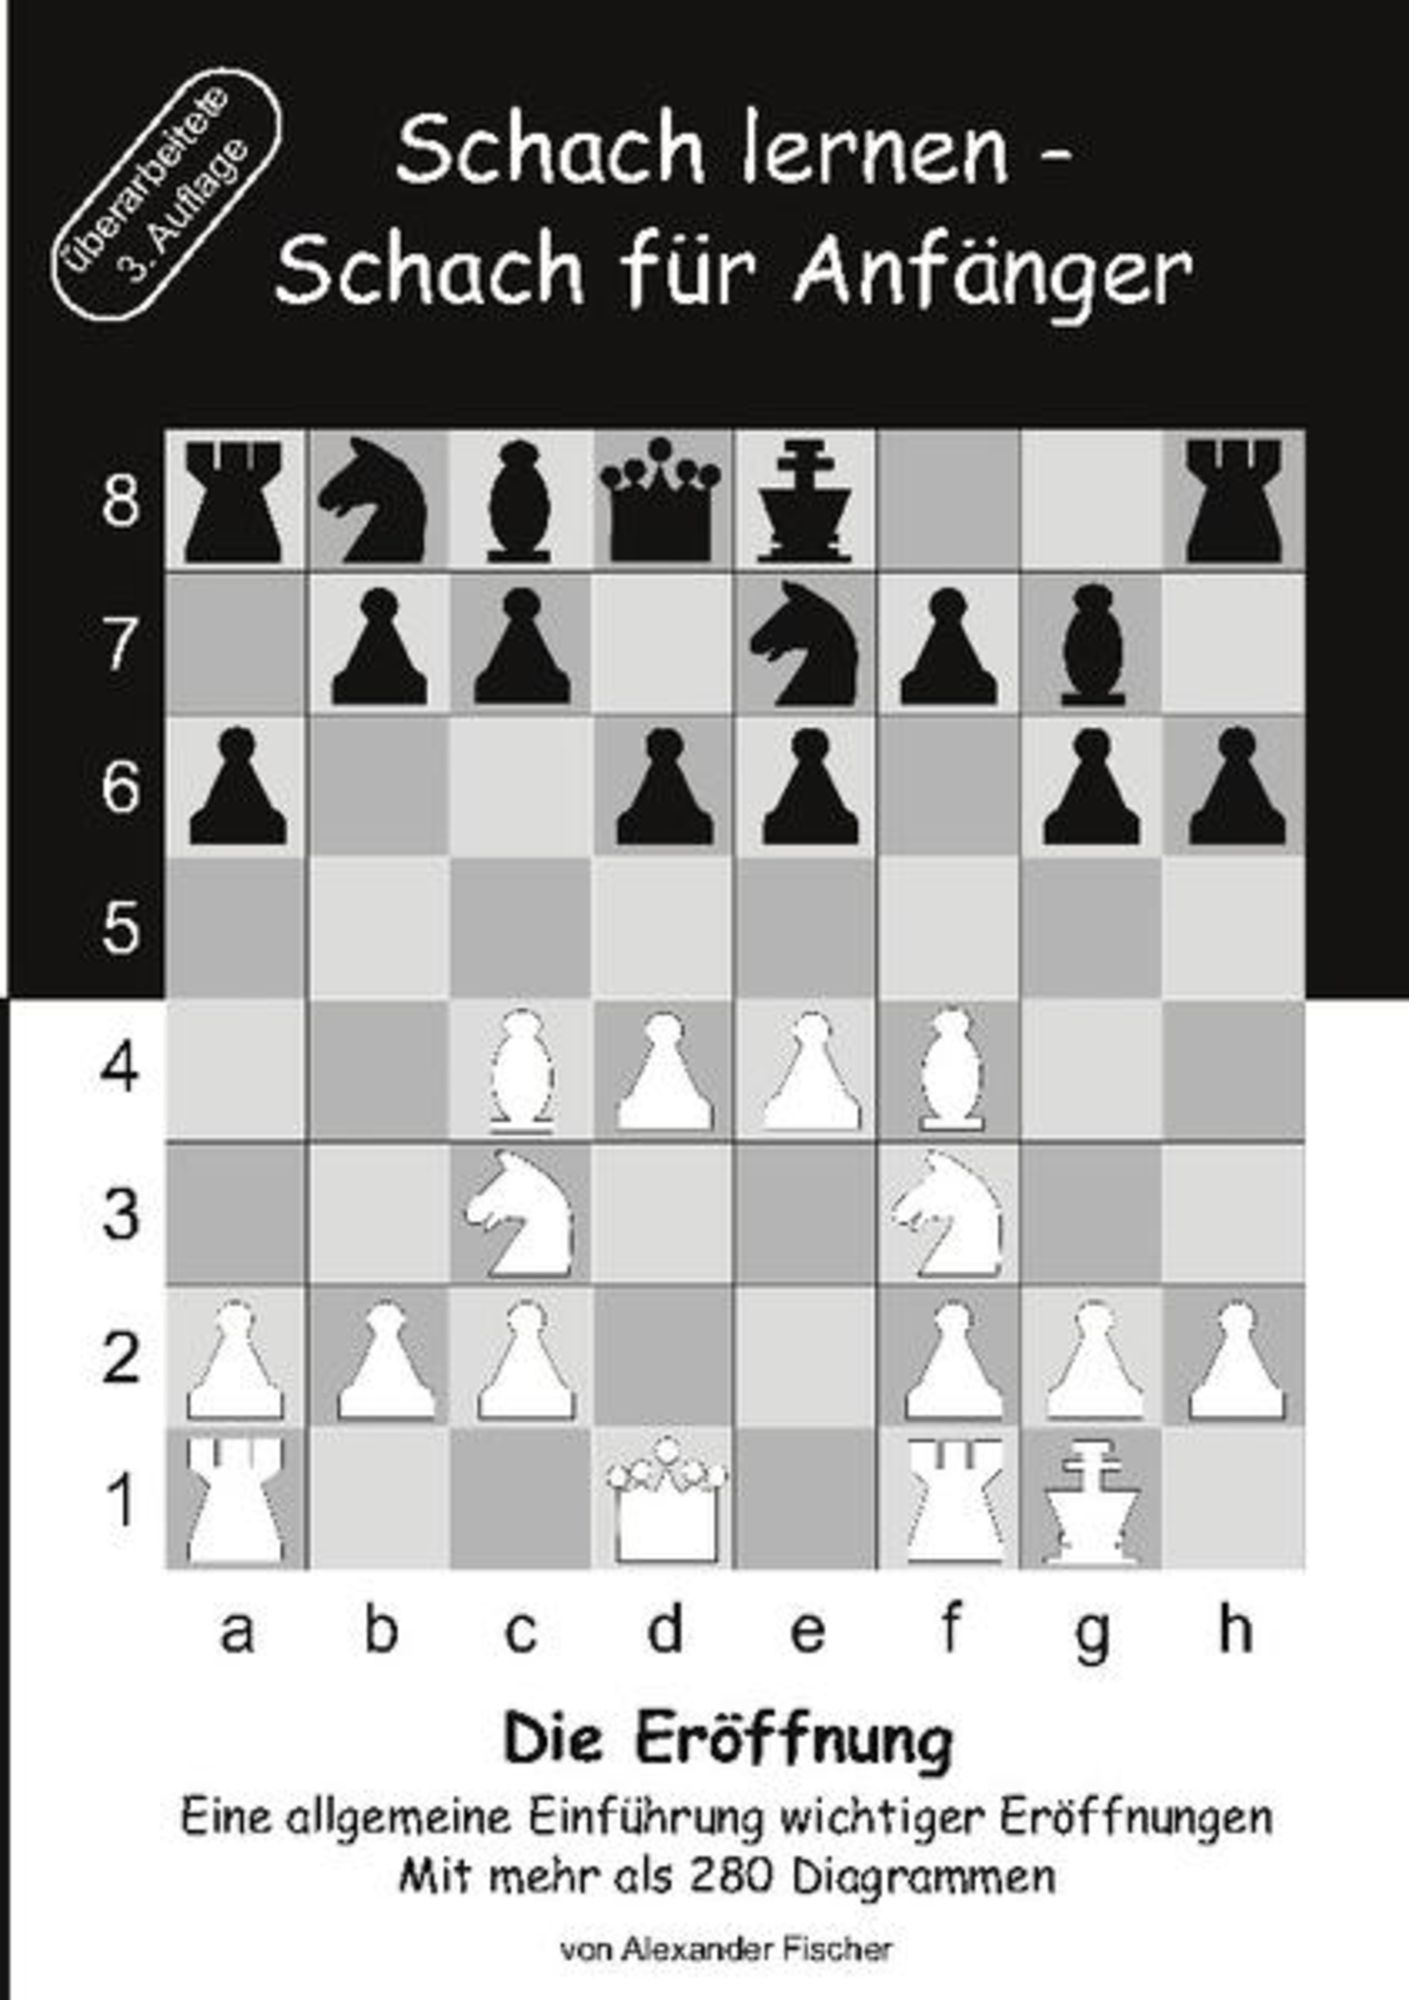 Schach lernen - Schach für Anfänger - Die Eröffnung von Alexander Fischer - Buch